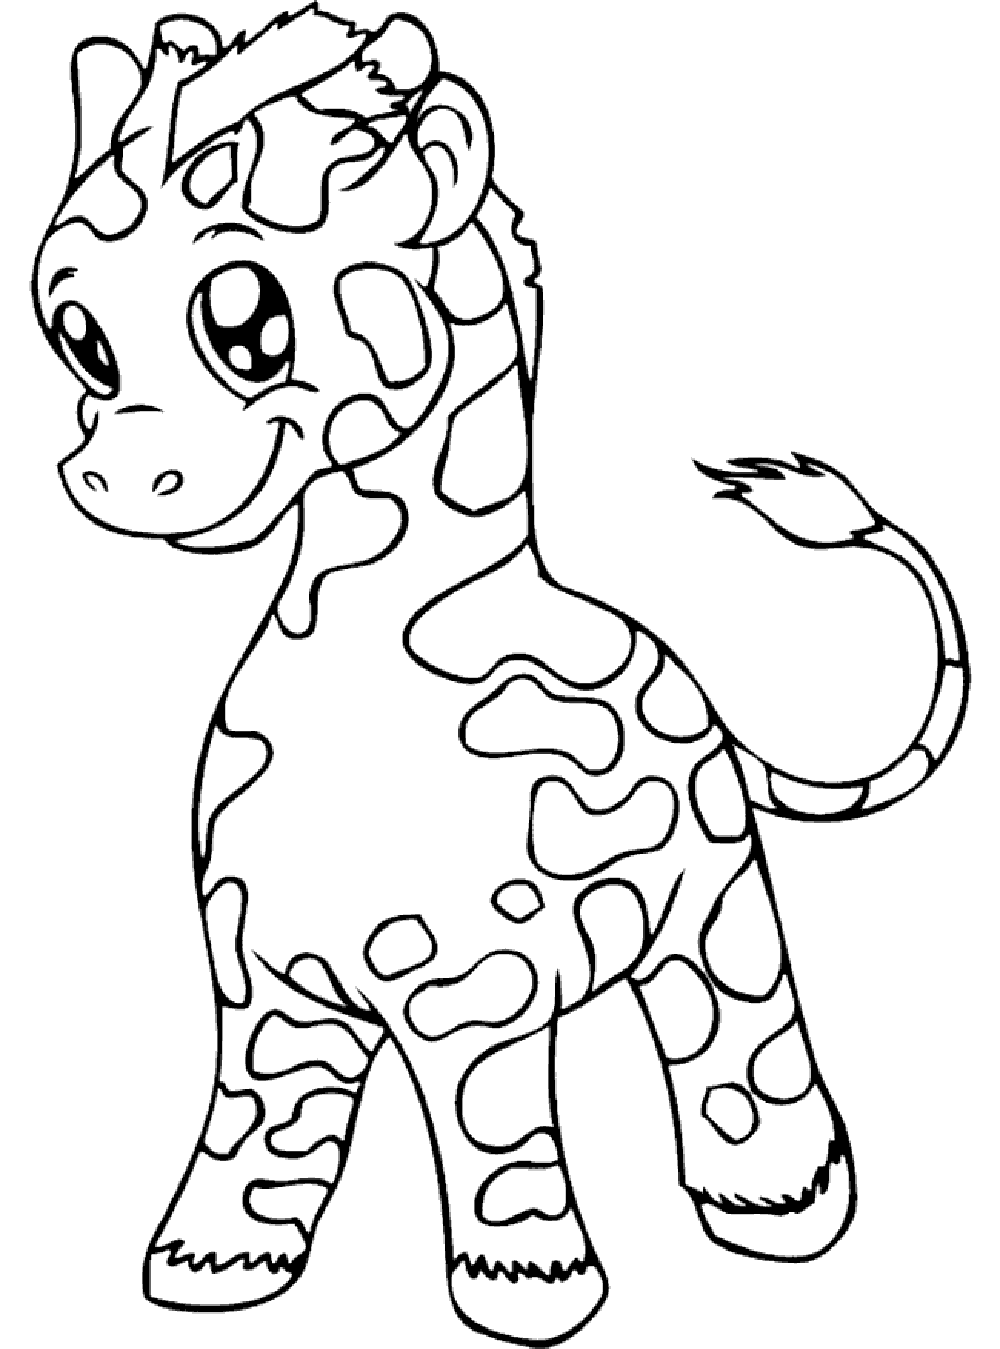 Colorir as manchas desta girafa!